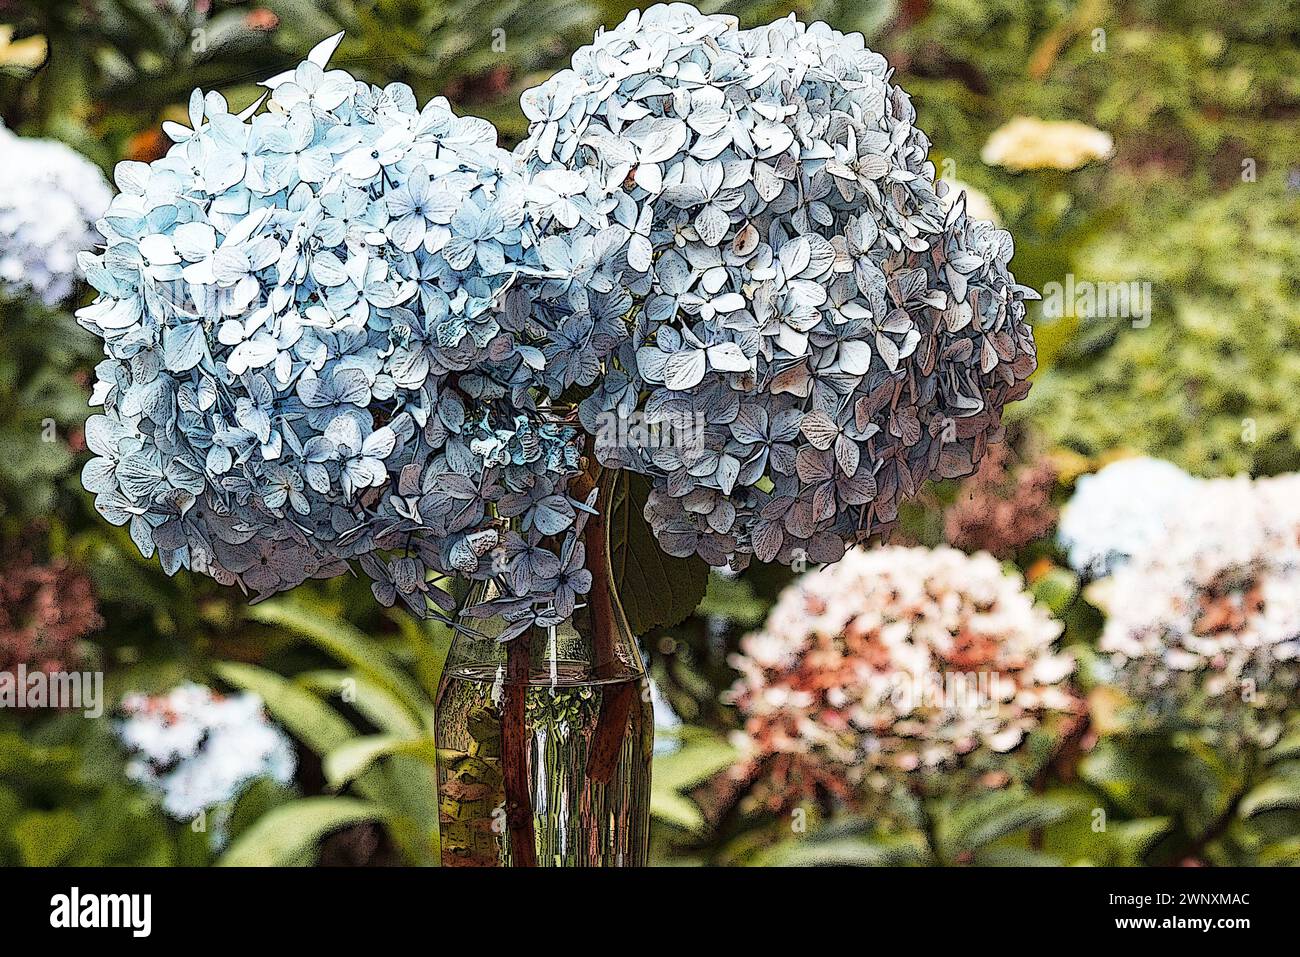 Hortensie blüht in einer Vase in einem Hortensie-Garten Stockfoto